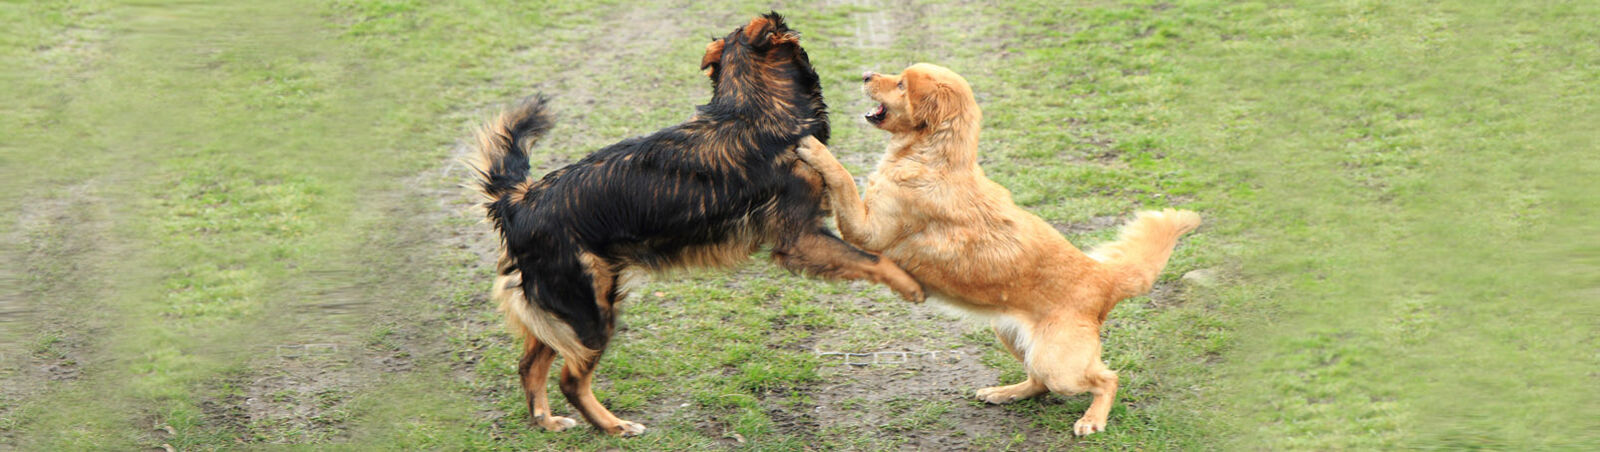 Zwei Hunde spielen wild miteinander.